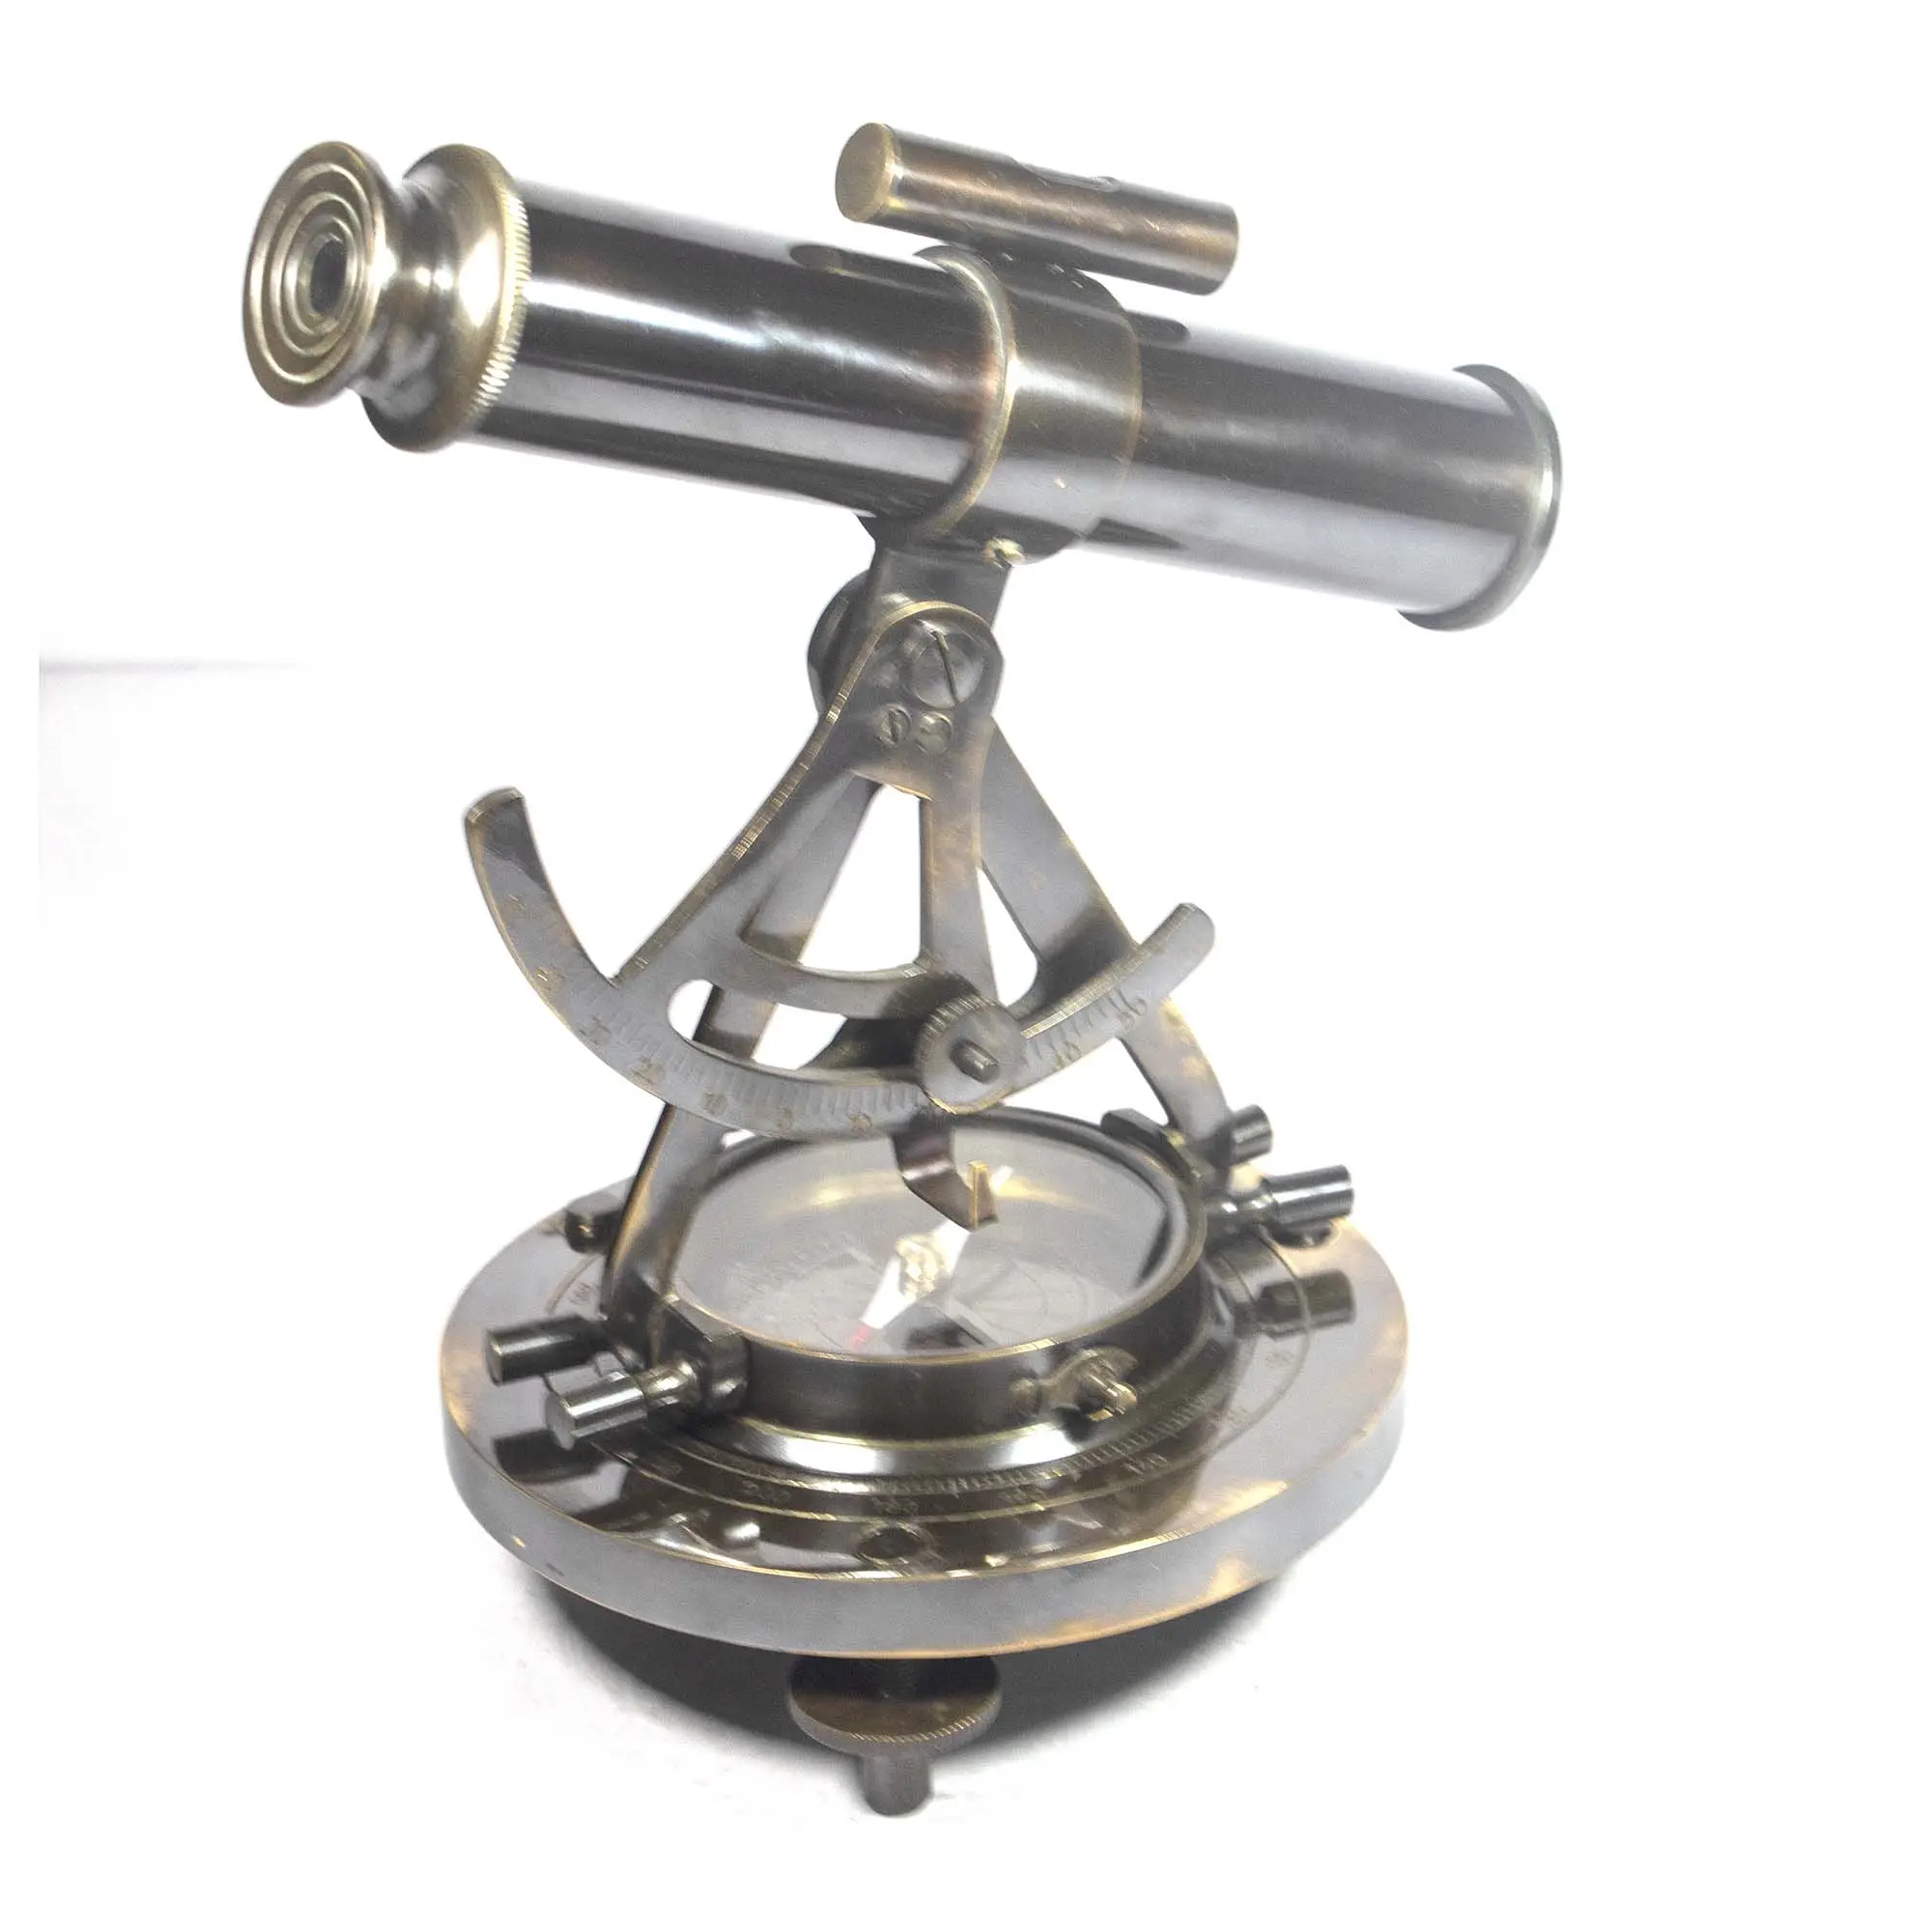 ट्रेंडी एंटीक डिज़ाइन पीतल उपहार दूरबीन के साथ कस्टम थोक एलिडाड एडजस्टेबल मोनोकुलर टेलीस्कोप माइक्रोस्कोप नाइट विजन